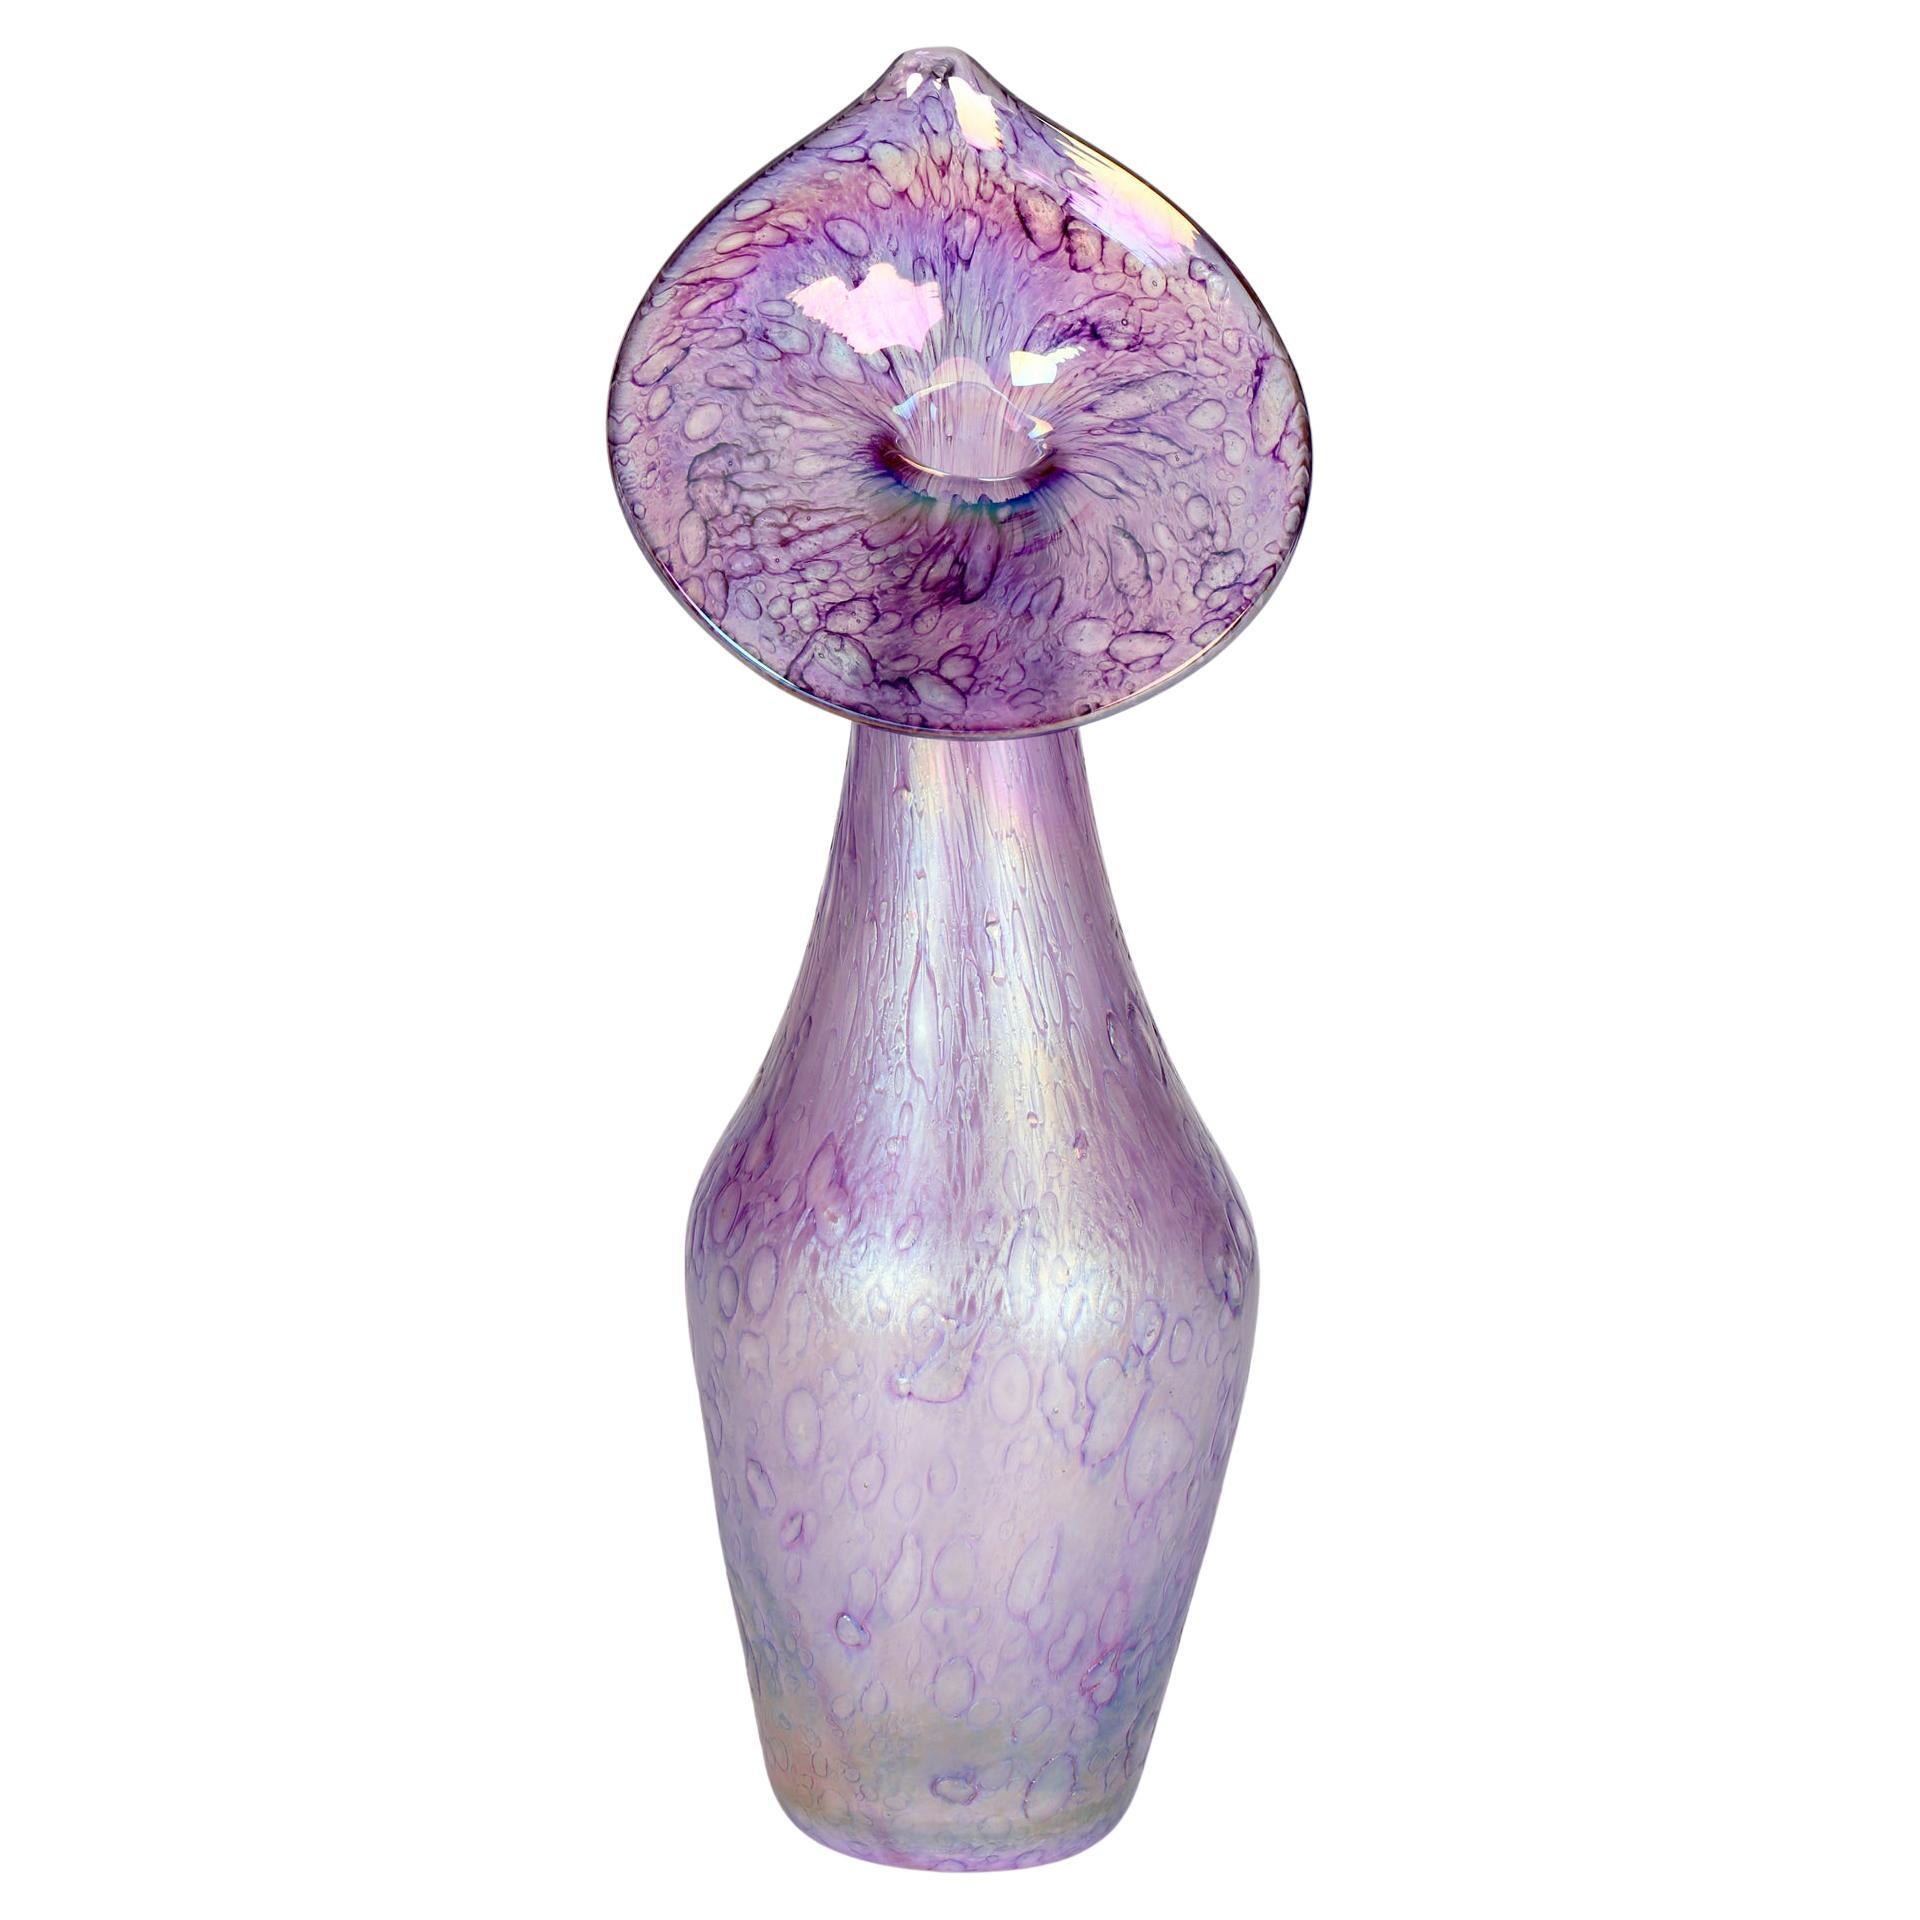 Jack in the Pulpit - Vase en verre d'art irisé de style floral